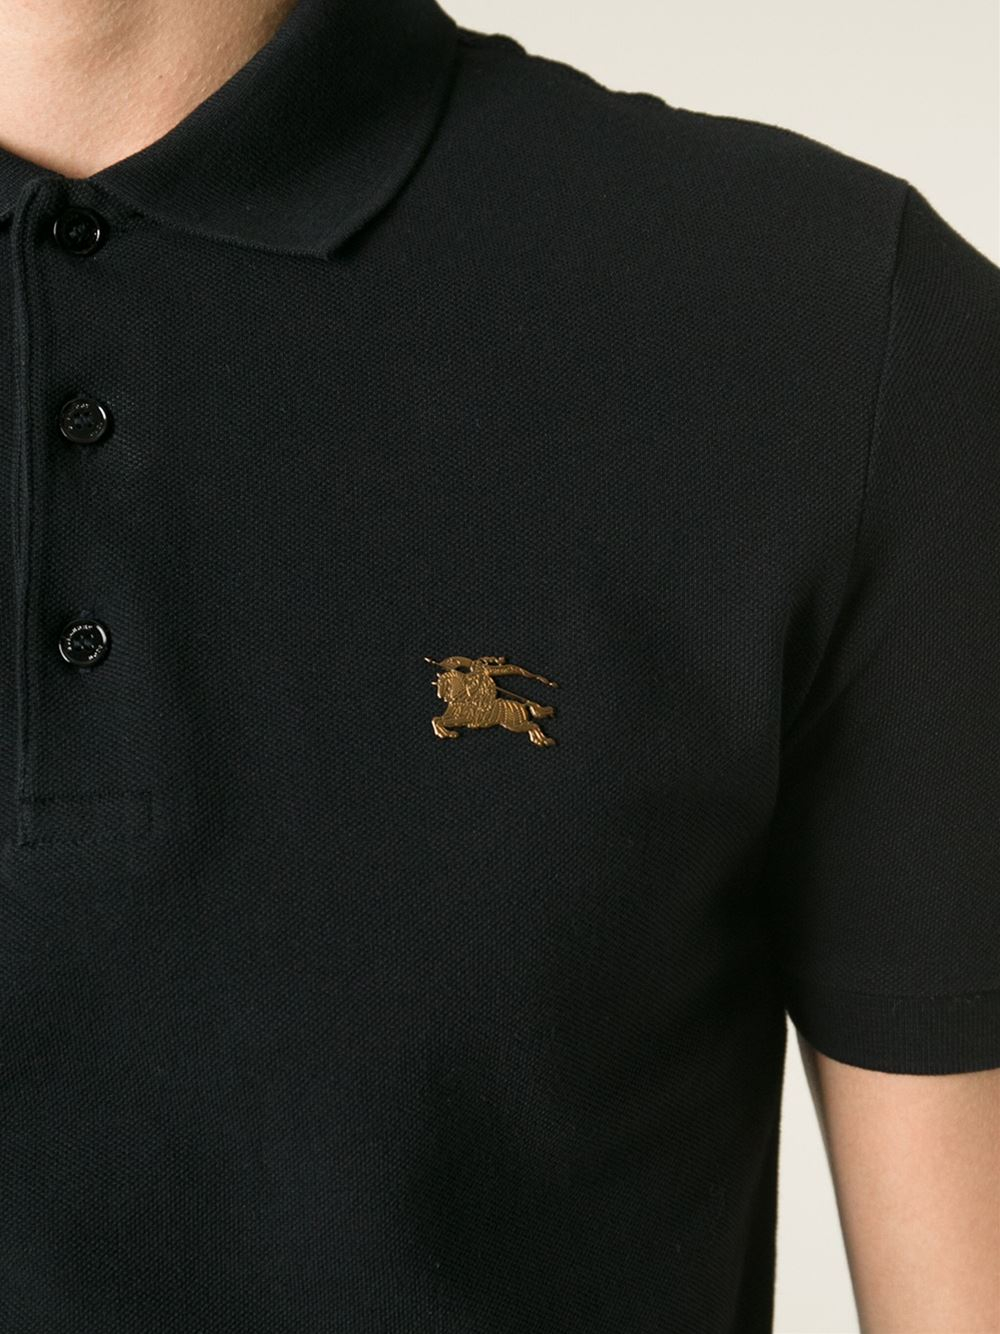 burberry polo shirt logo